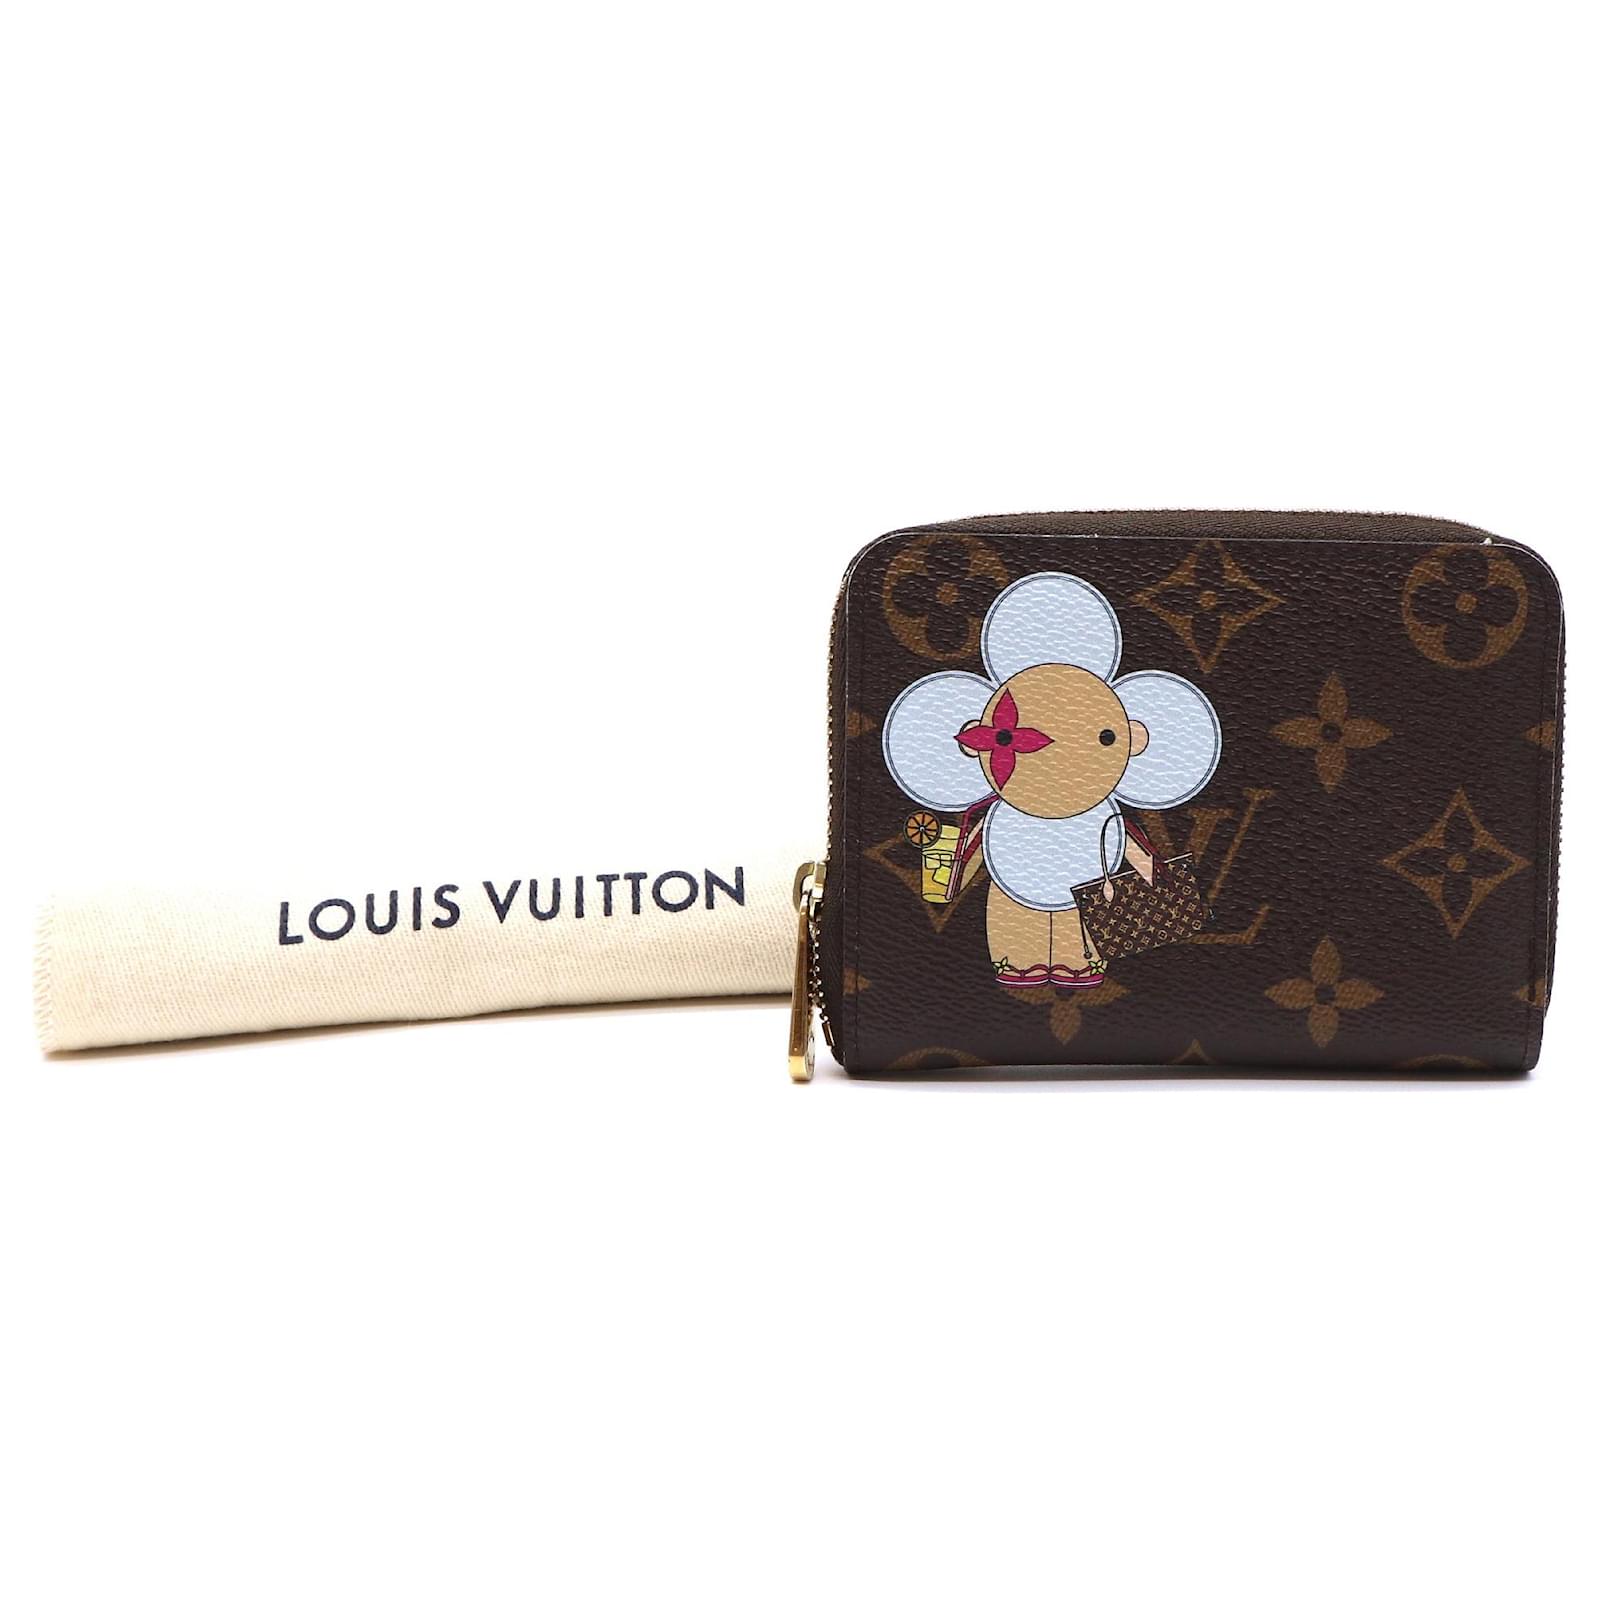 Louis Vuitton Long Wallet Japan Limited Zippy Wallet Monogram Vivienne 2020